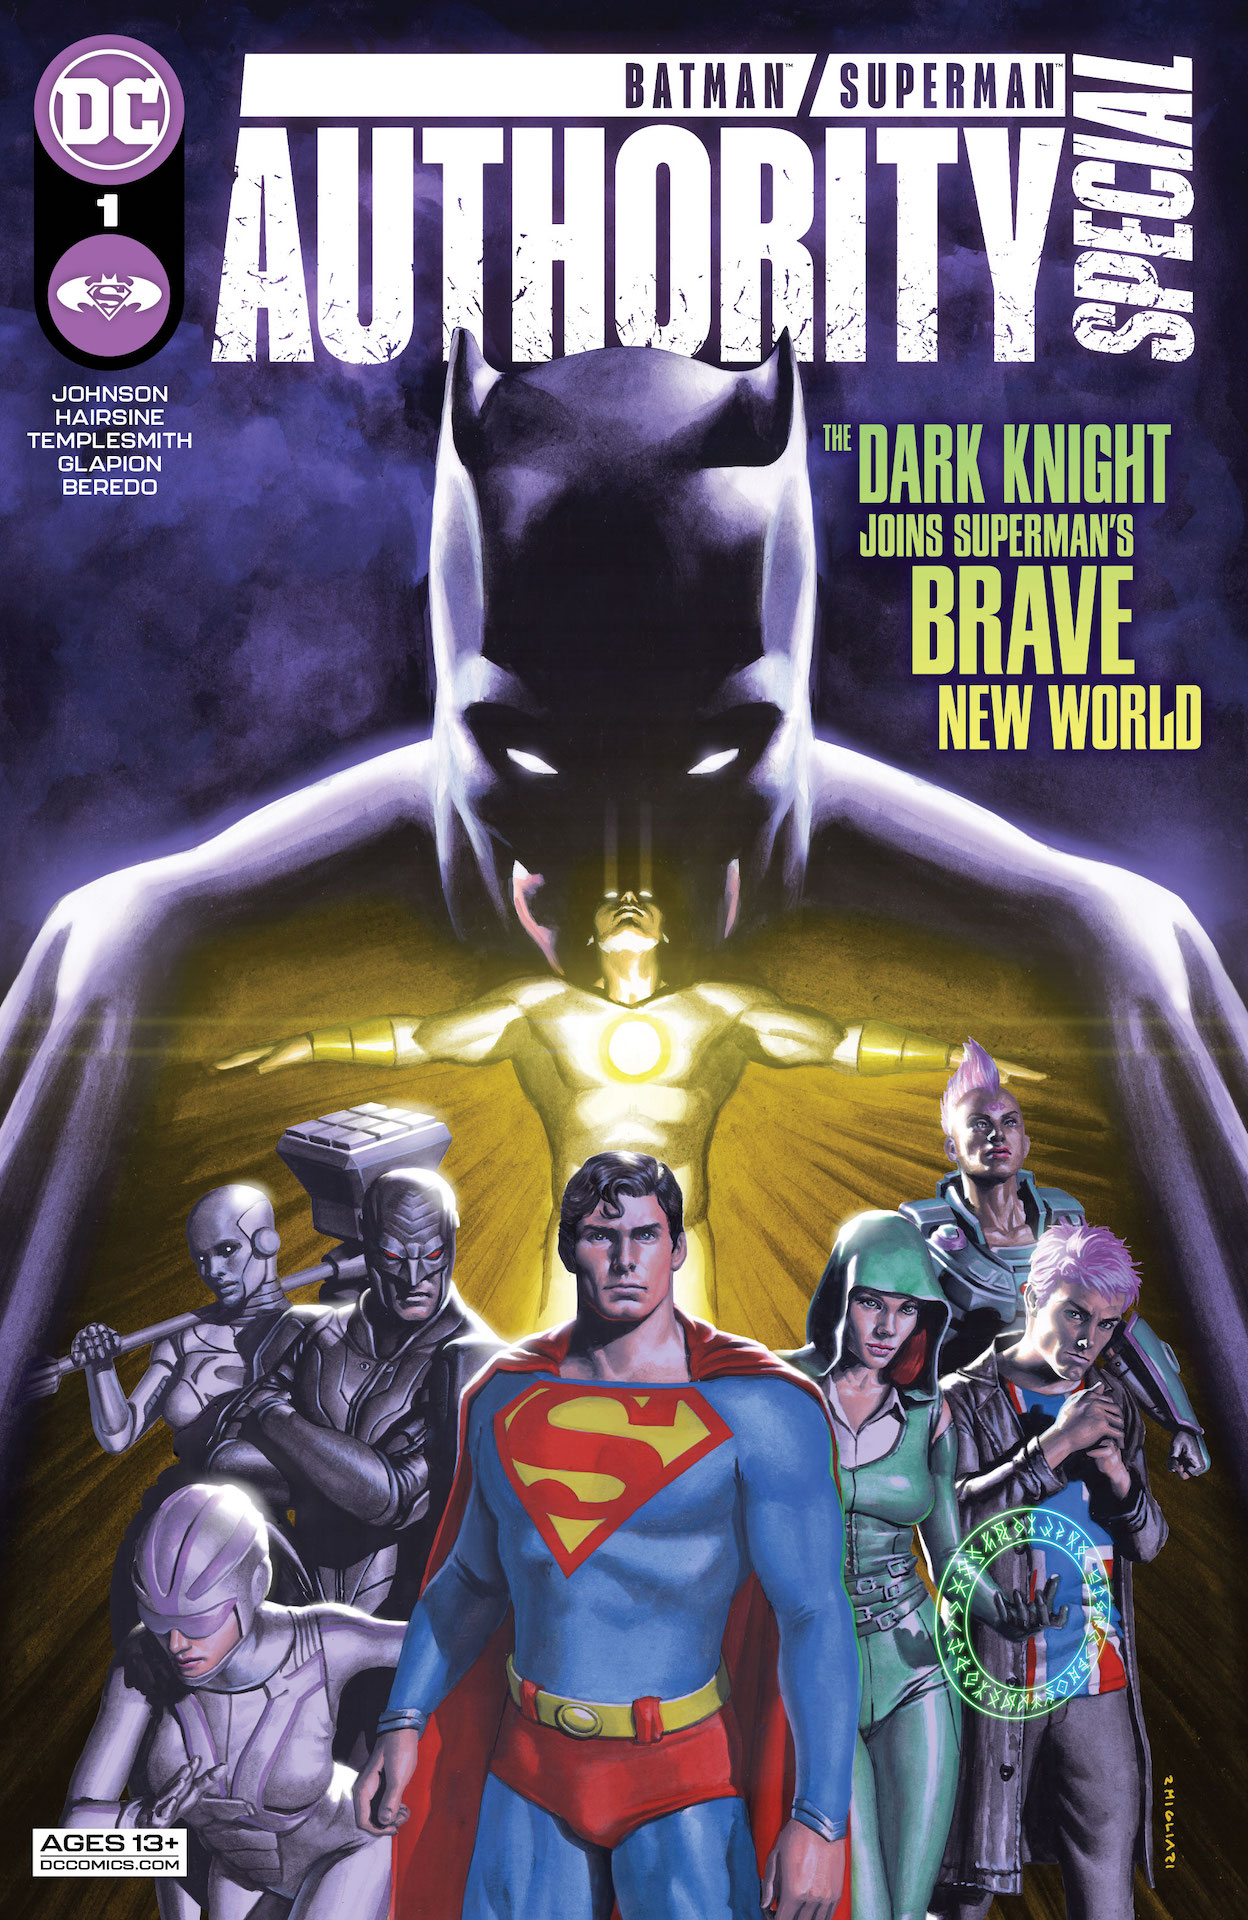 DC Preview: Batman Superman Authority Special #1